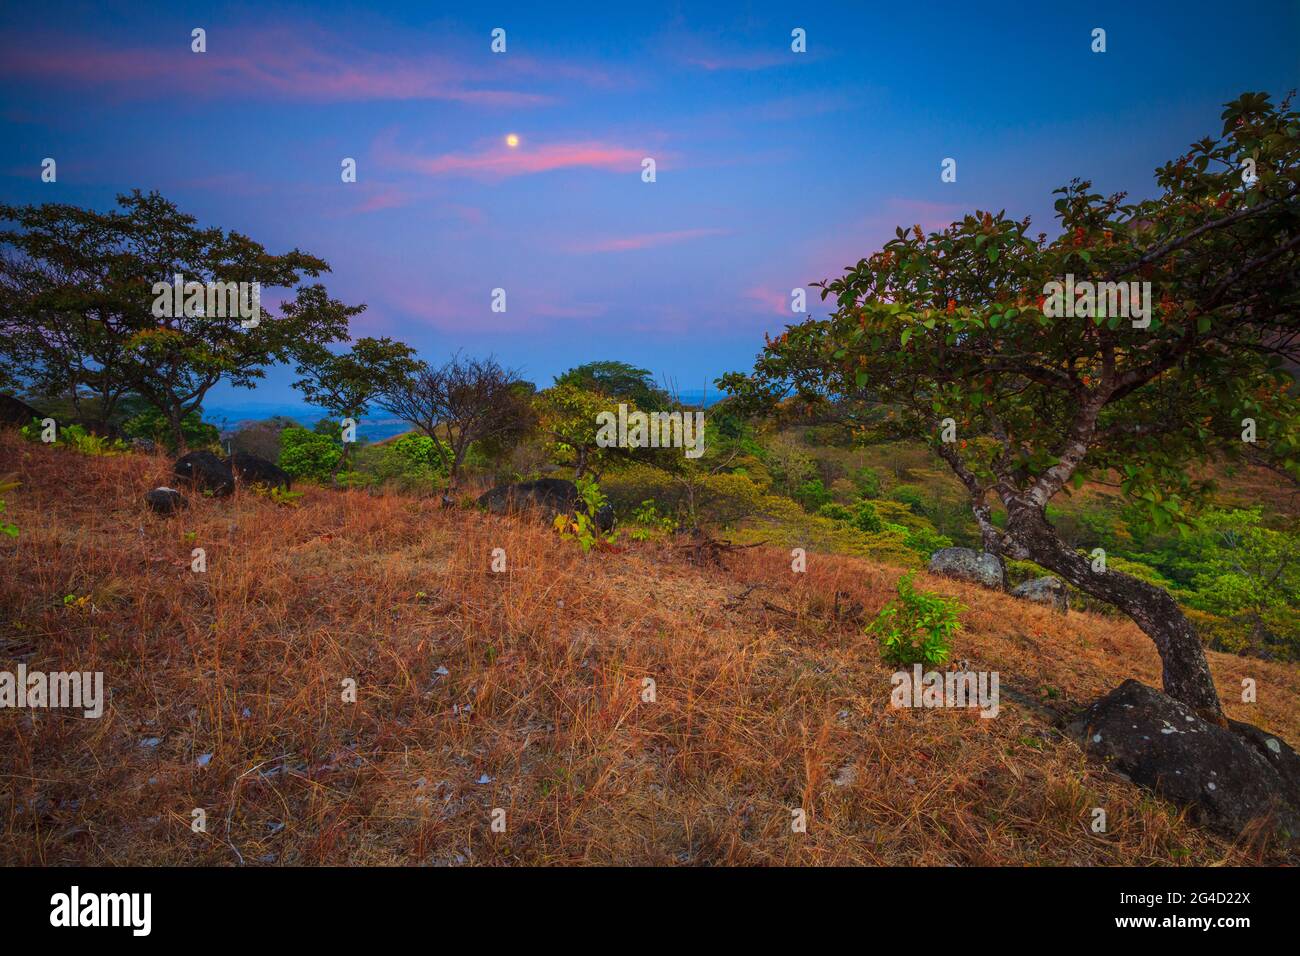 Panamalandschaft mit Abendlicht, farbenfrohem Himmel und aufsteigendem Mond in der hügeligen Landschaft bei Ola in der Provinz Cocle, Republik Panama Stockfoto